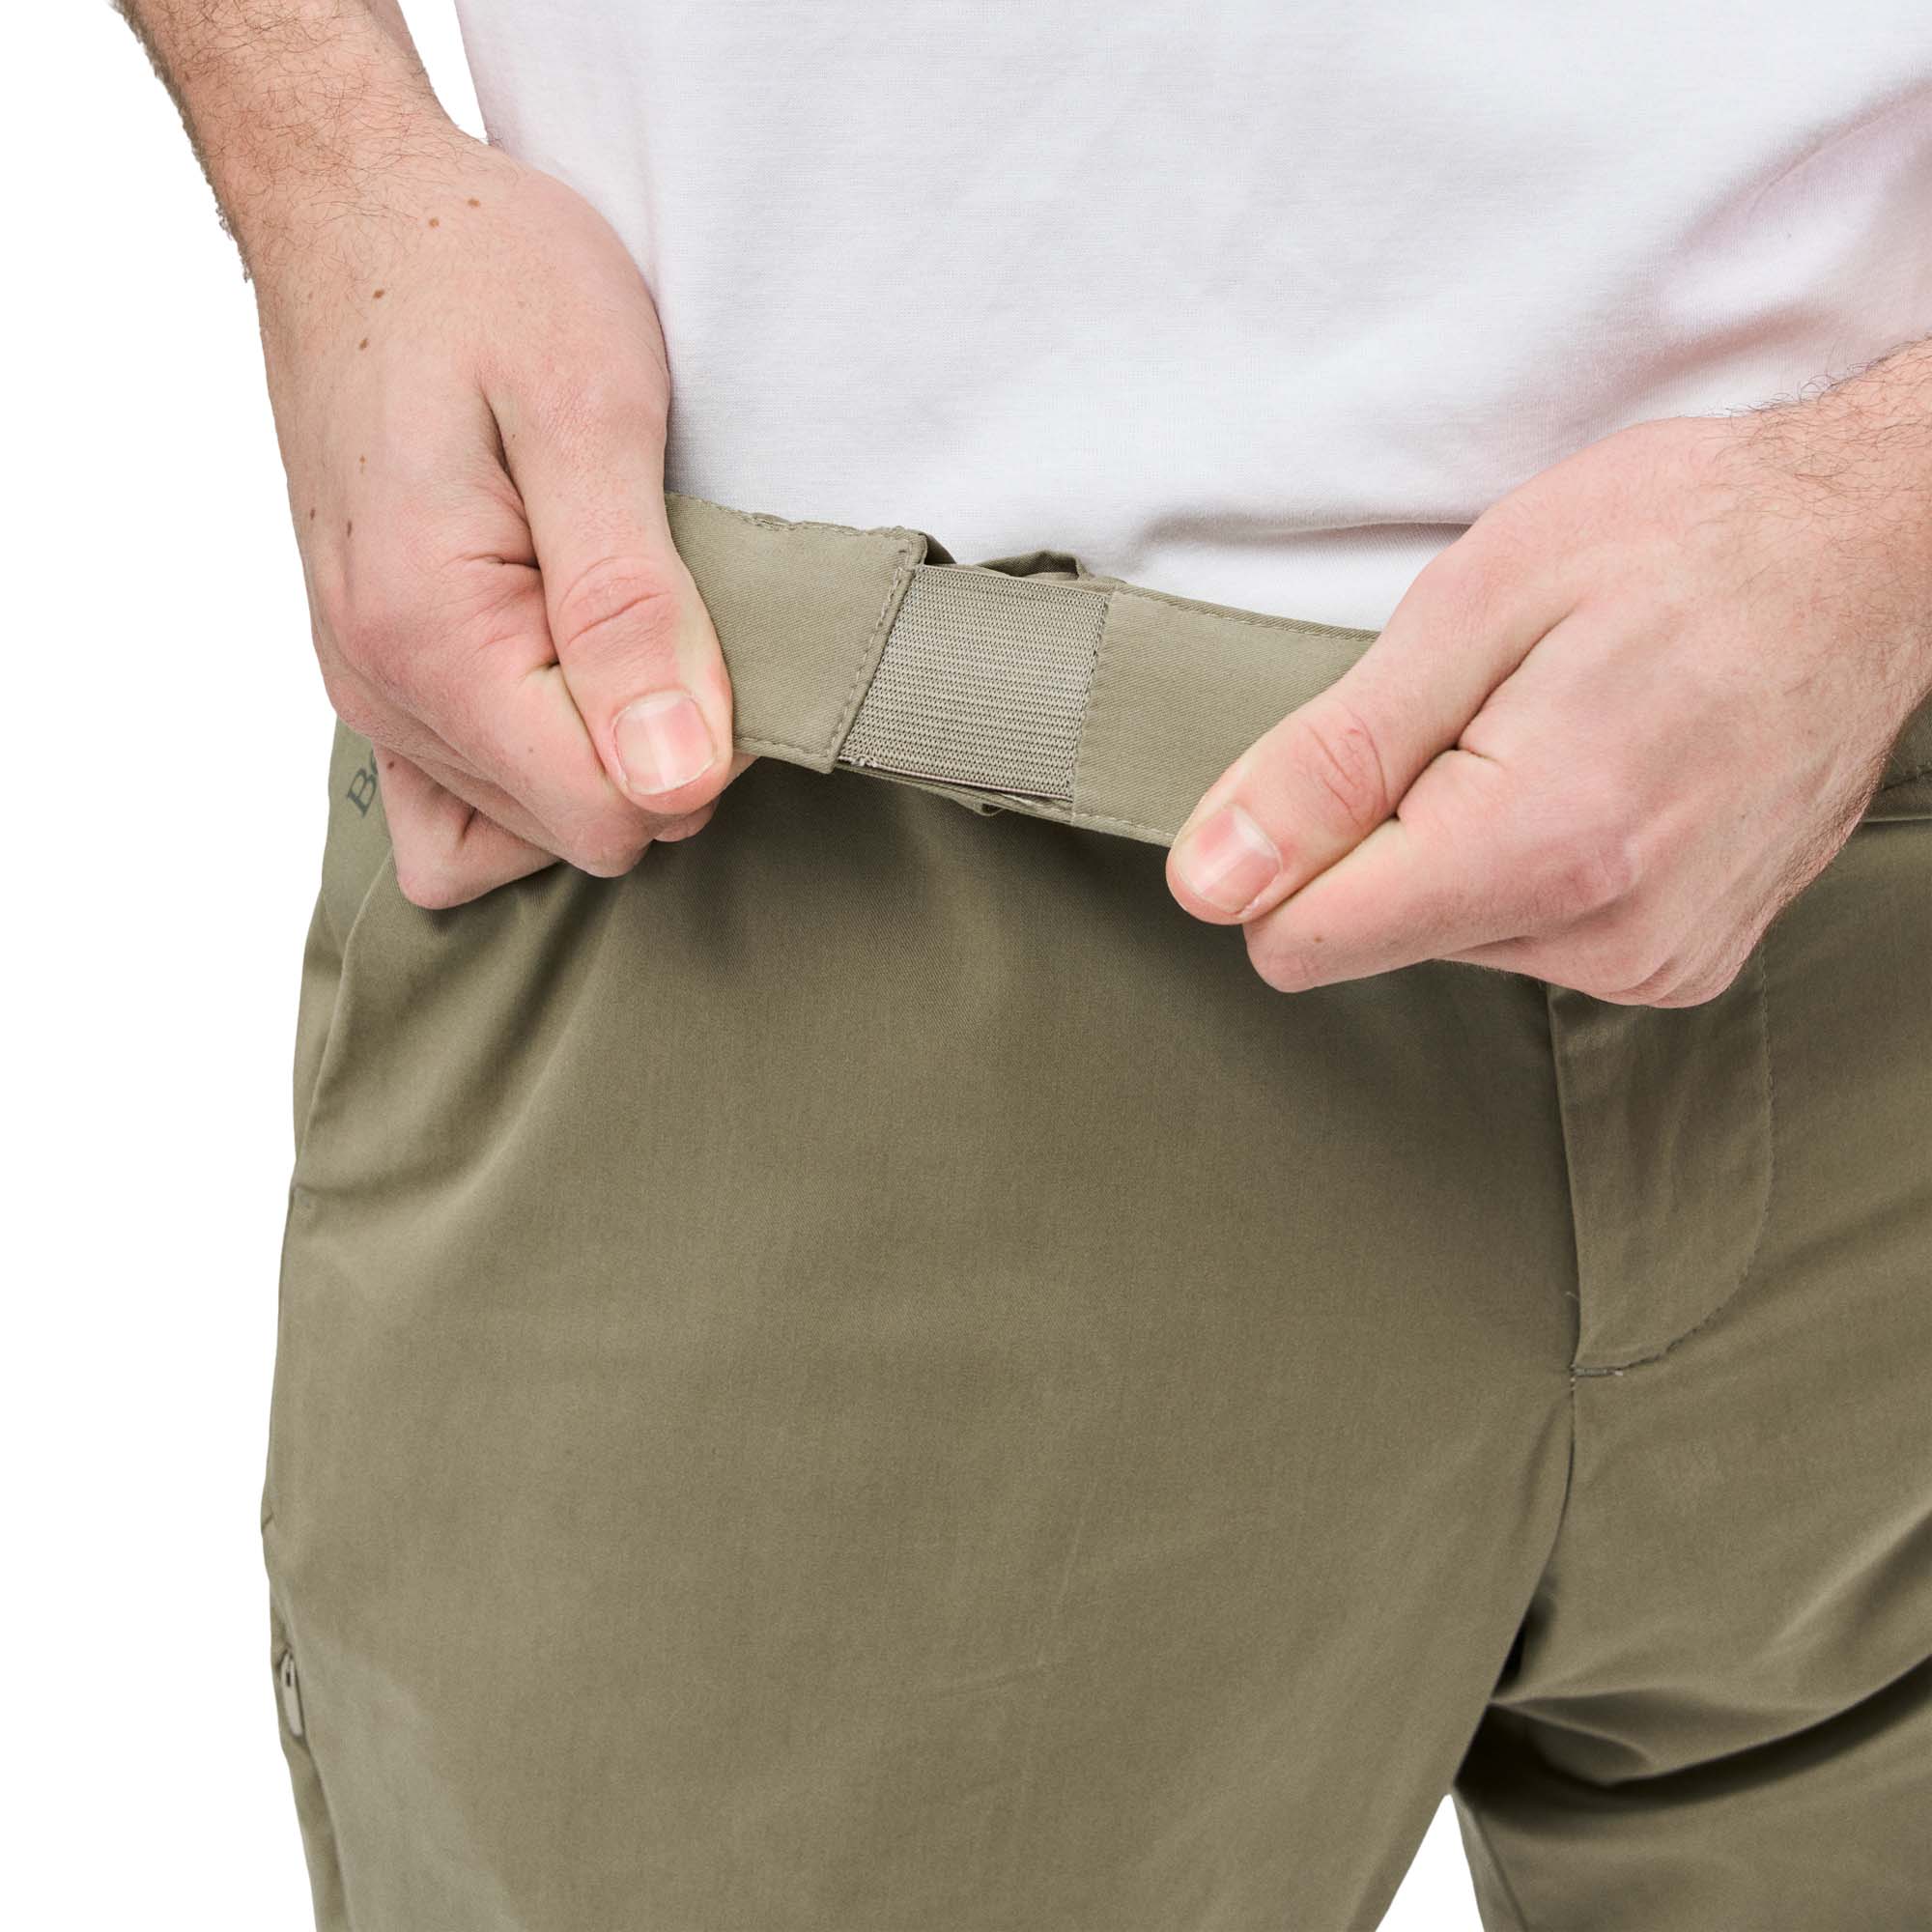 Tropicfeel ProTravel Zip-Off Pant Men's 2-in-1 Trousers/Shorts